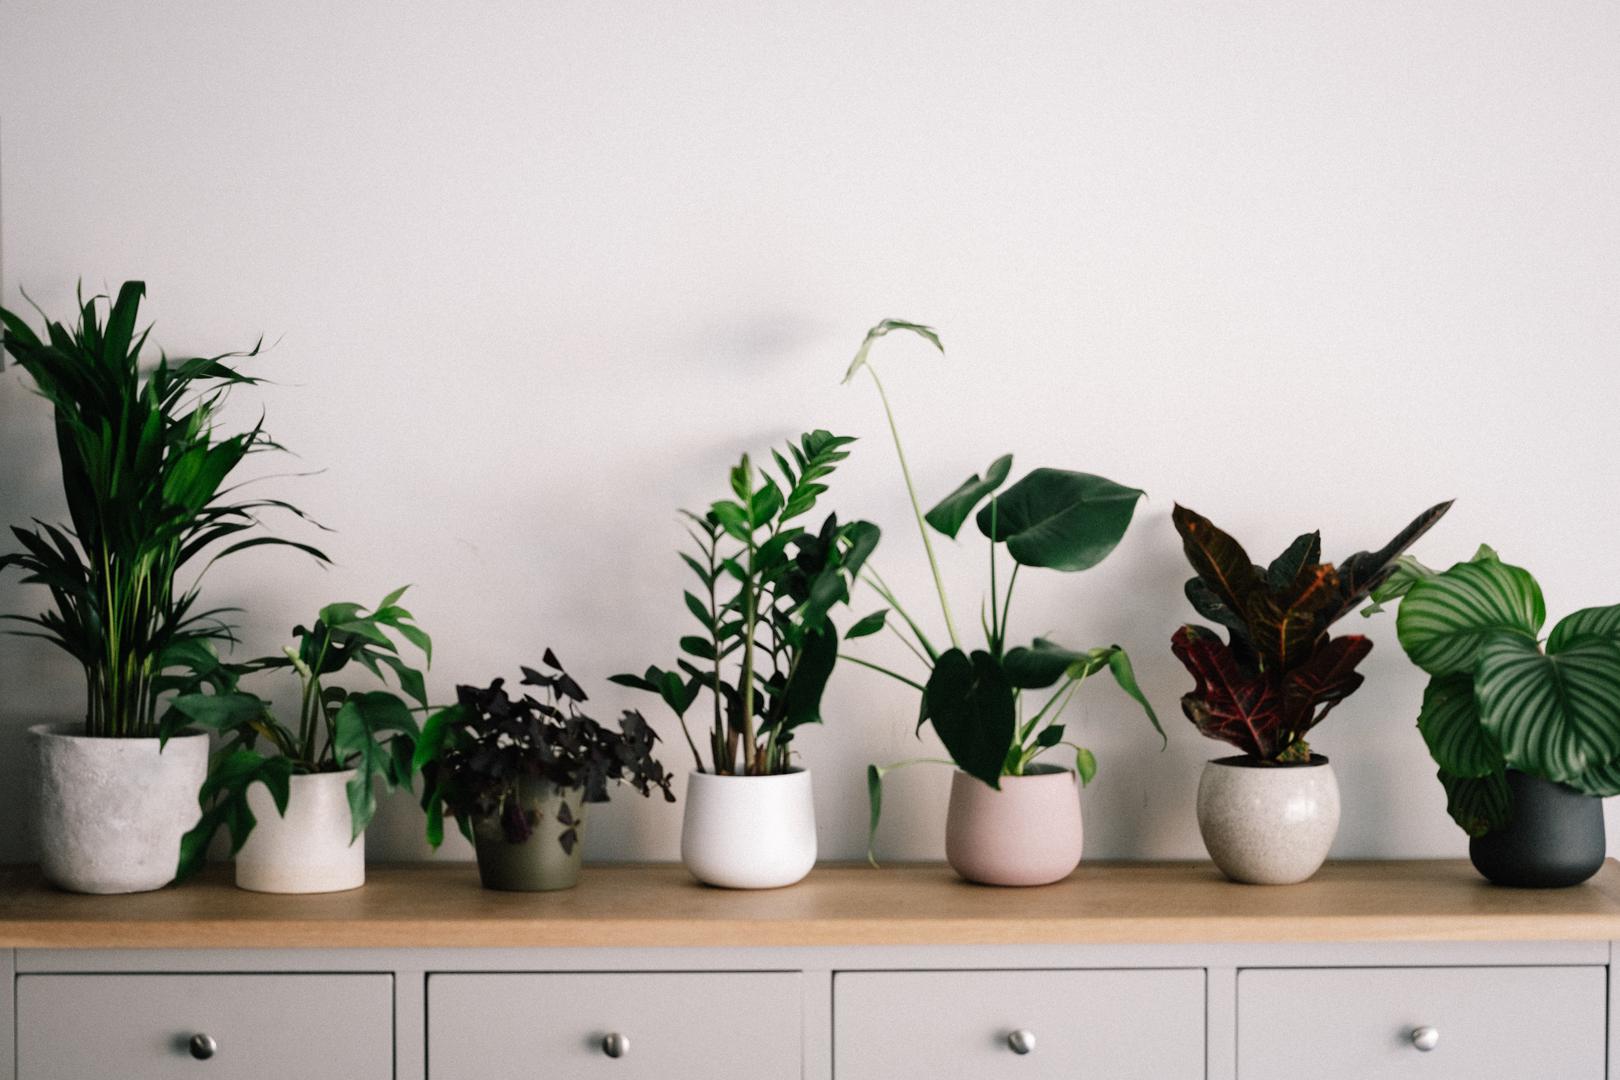 Ovo su najbolje biljke za zatvorene prostore koje će poboljšati vaše zdravlje, ali i oživjeti interijer vašeg doma. Ove su biljke dobre za zatvorene prostore, jednostavno se brinuti za njih i najbolje pročišćavaju zrak oko sebe, piše Bright Side. 